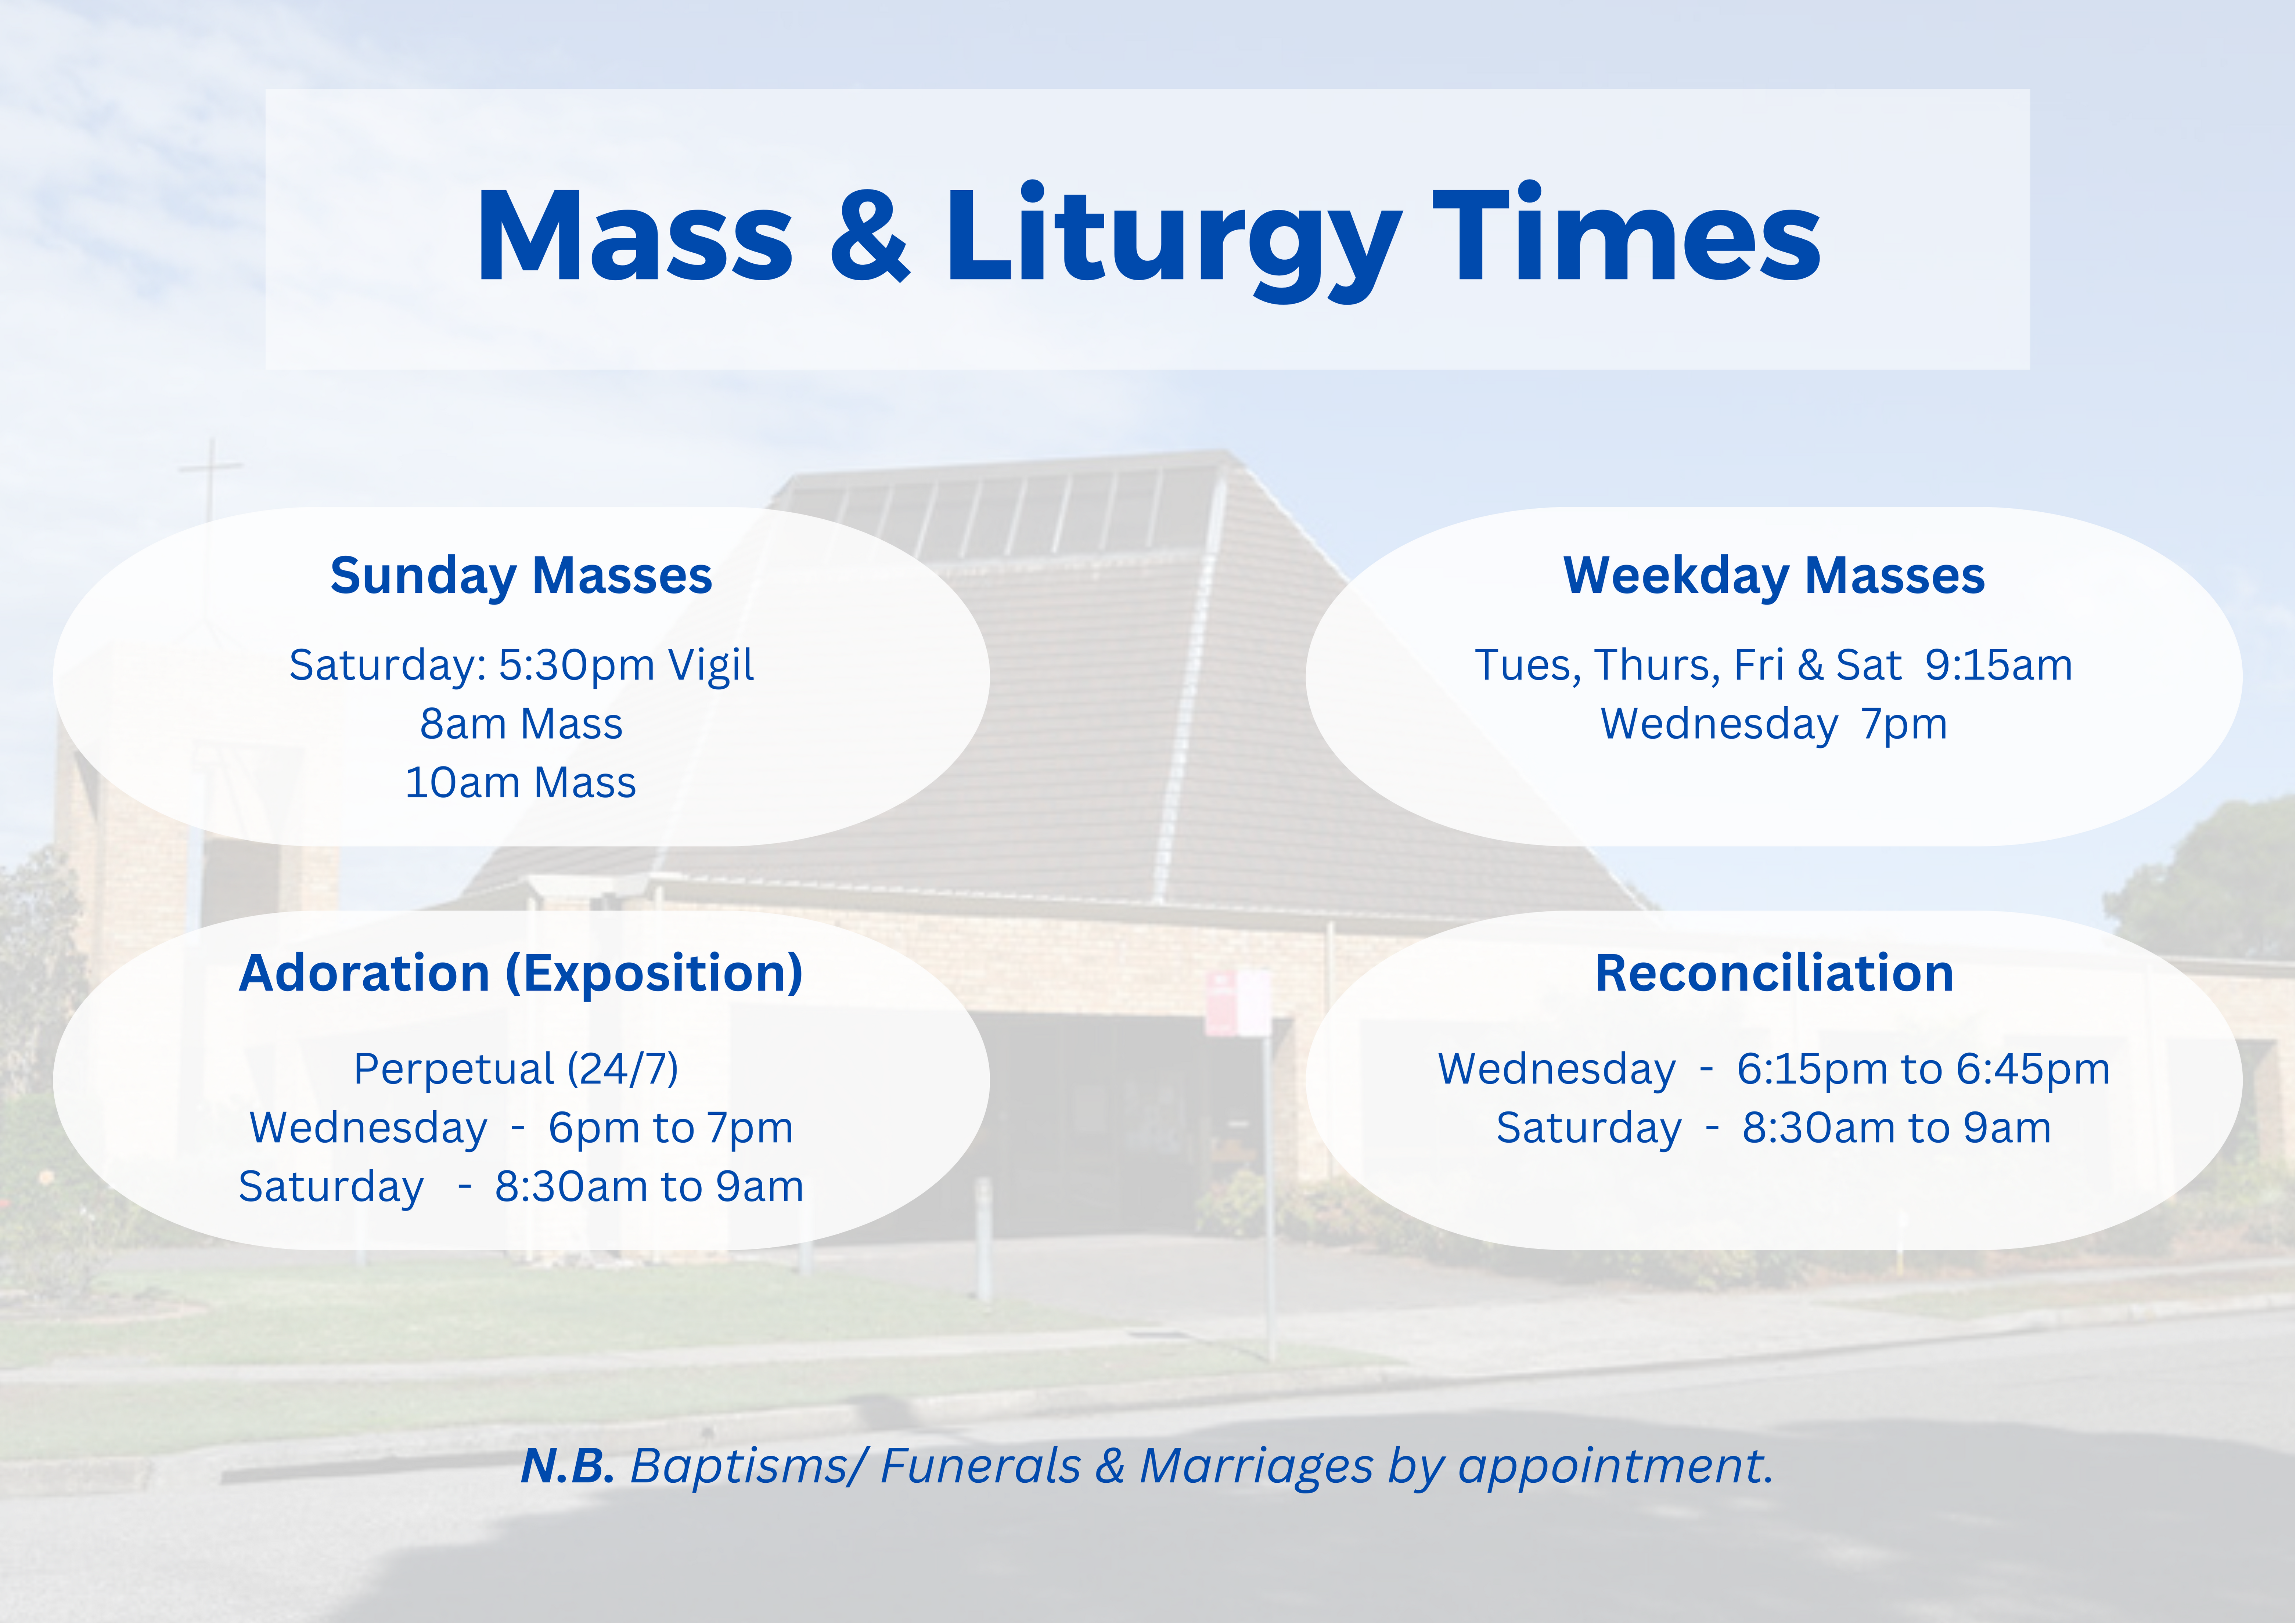 HNMP - Mass & Liturgy Times